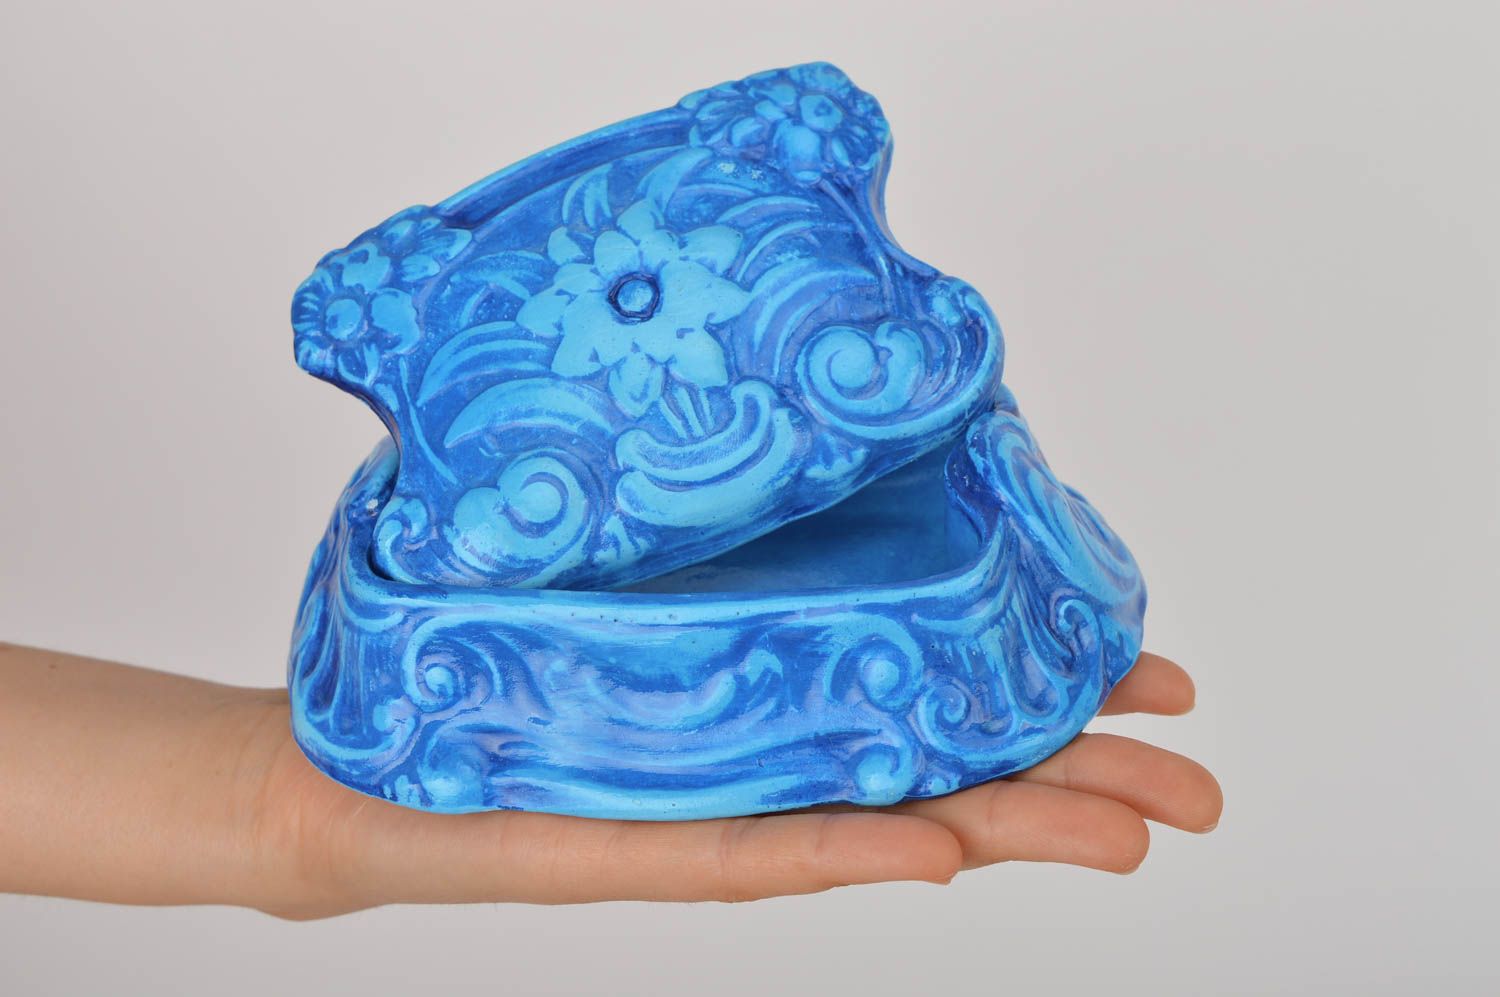 Шкатулка из гипса ручной работы винтажная шкатулка синяя подарок женщине фото 4